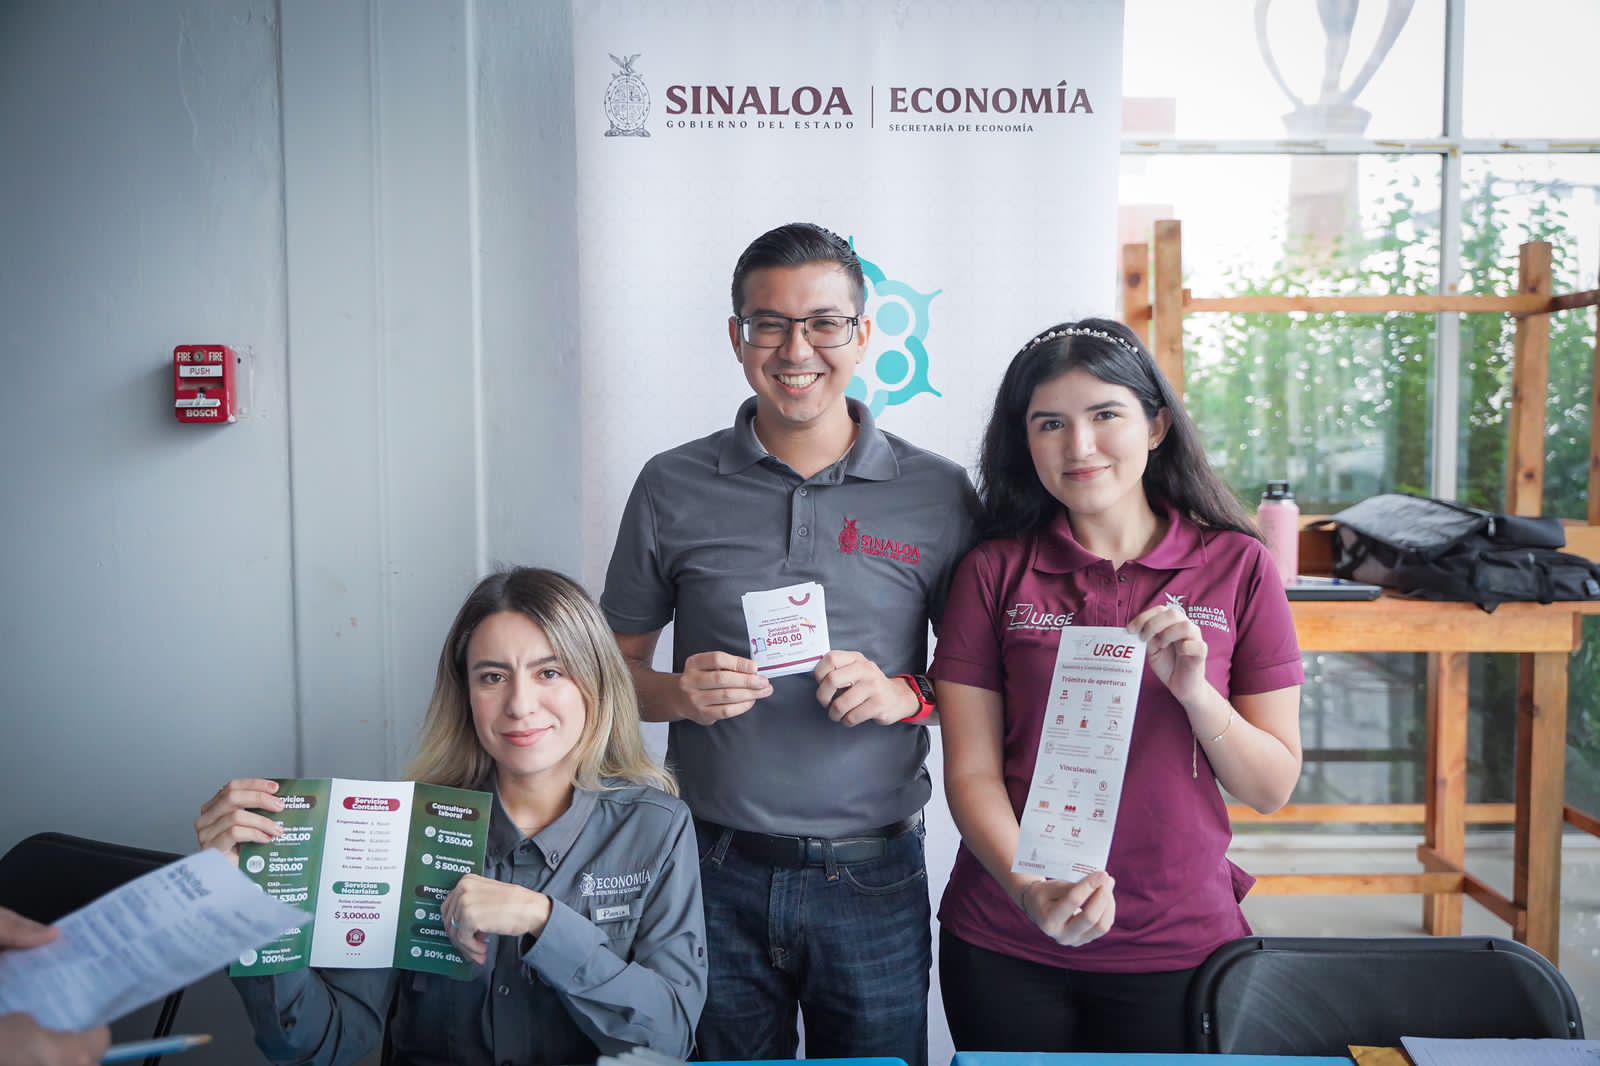 $!Gobierno de Sinaloa ha logrado colocar 8 mil empleos formales en lo que va de 2023: Economía